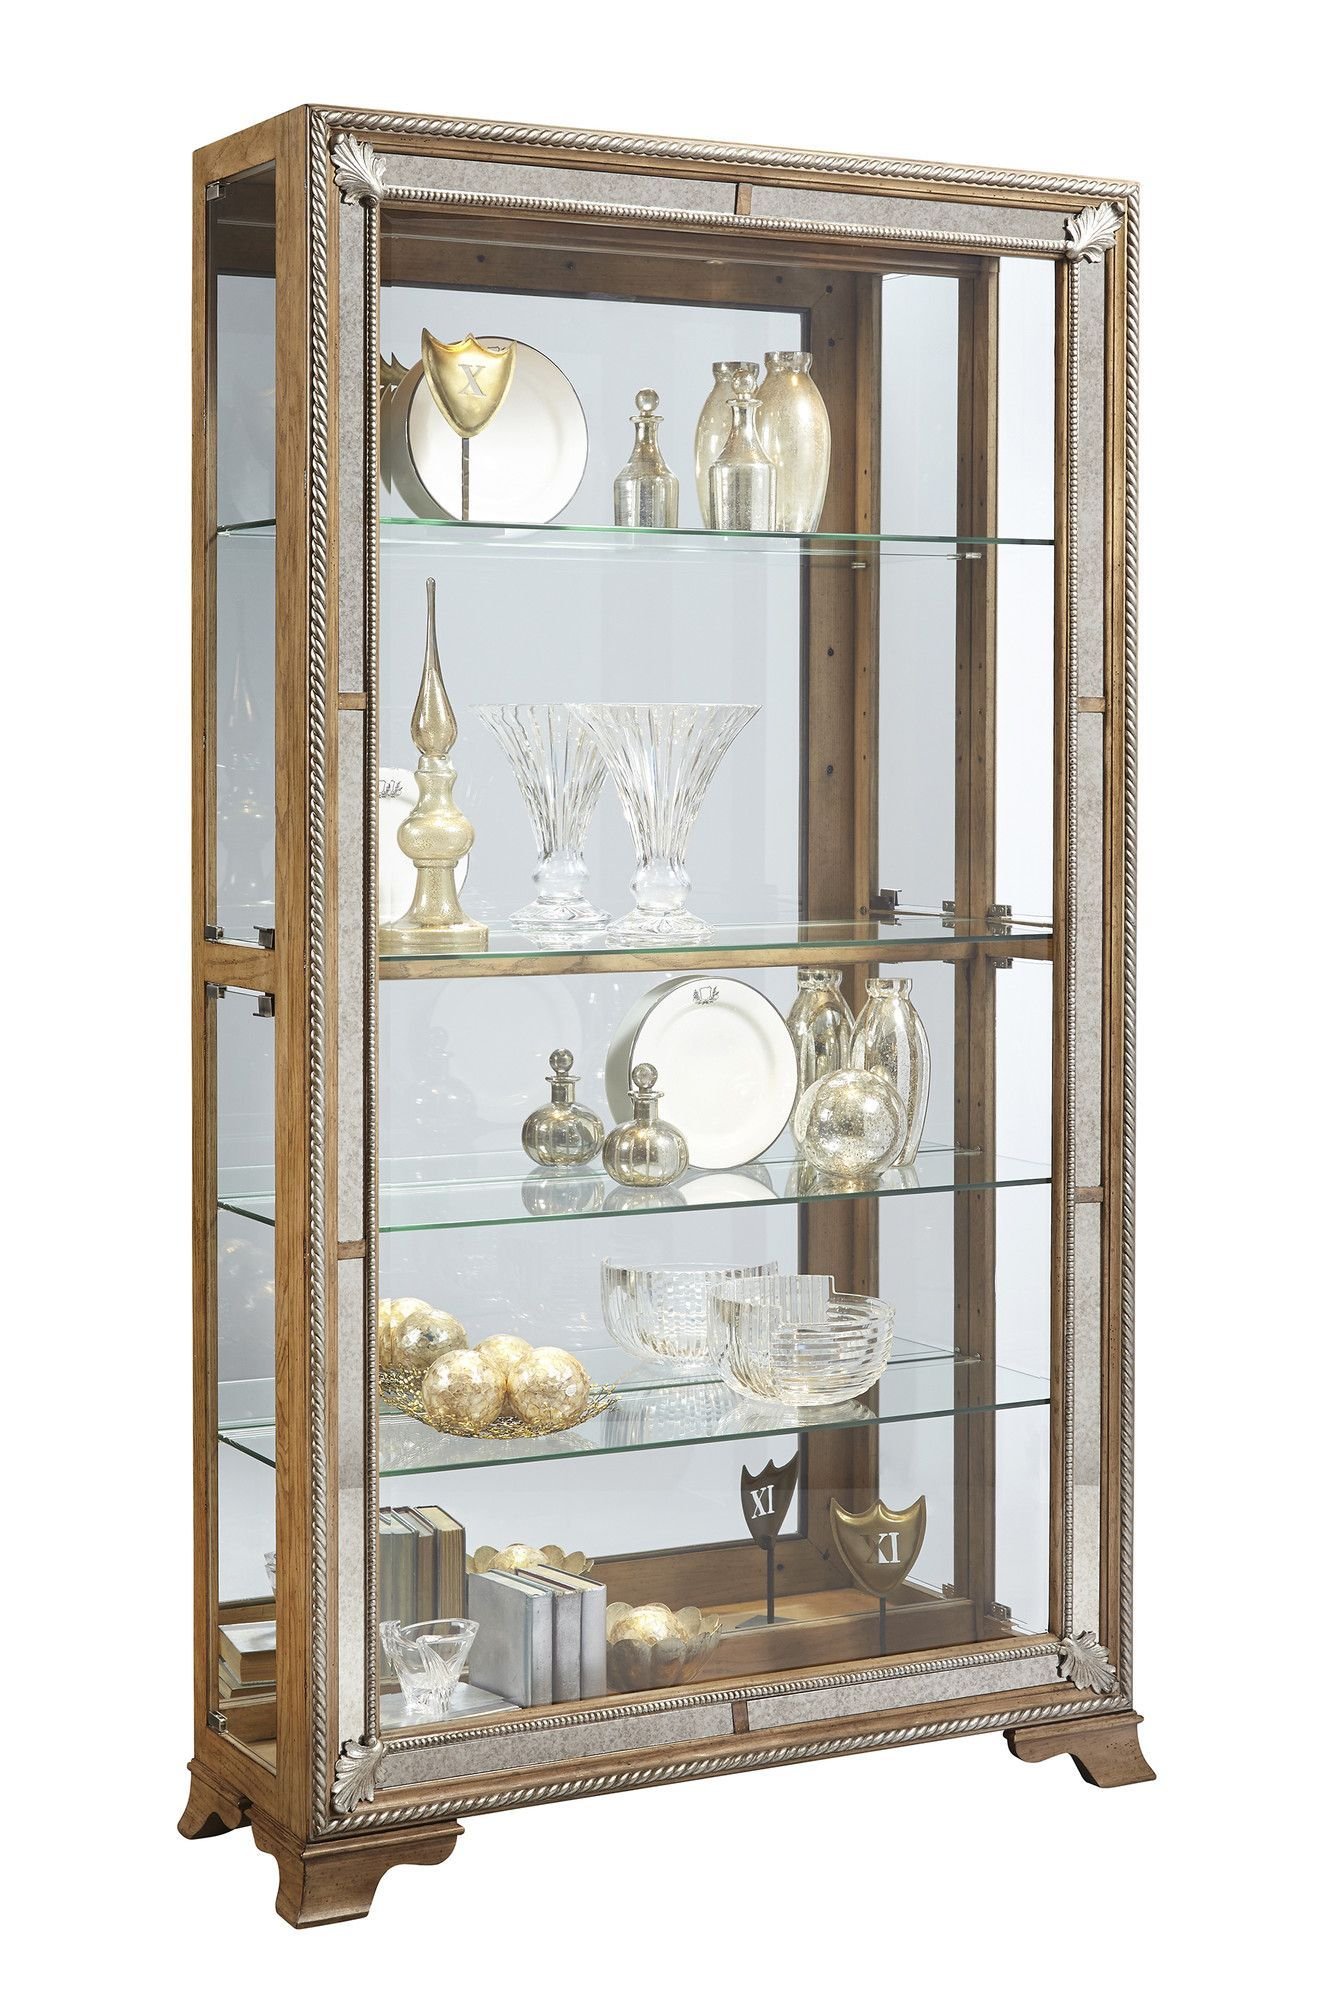 Недорогие витрины посуды. Шкаф для посуды / витрина Taylor. Cabinet / Showcase by Metner. Шатура витрина для посуды Модерн. Шкаф-витрина "Мальцов". Стеклянная витрина для посуды.